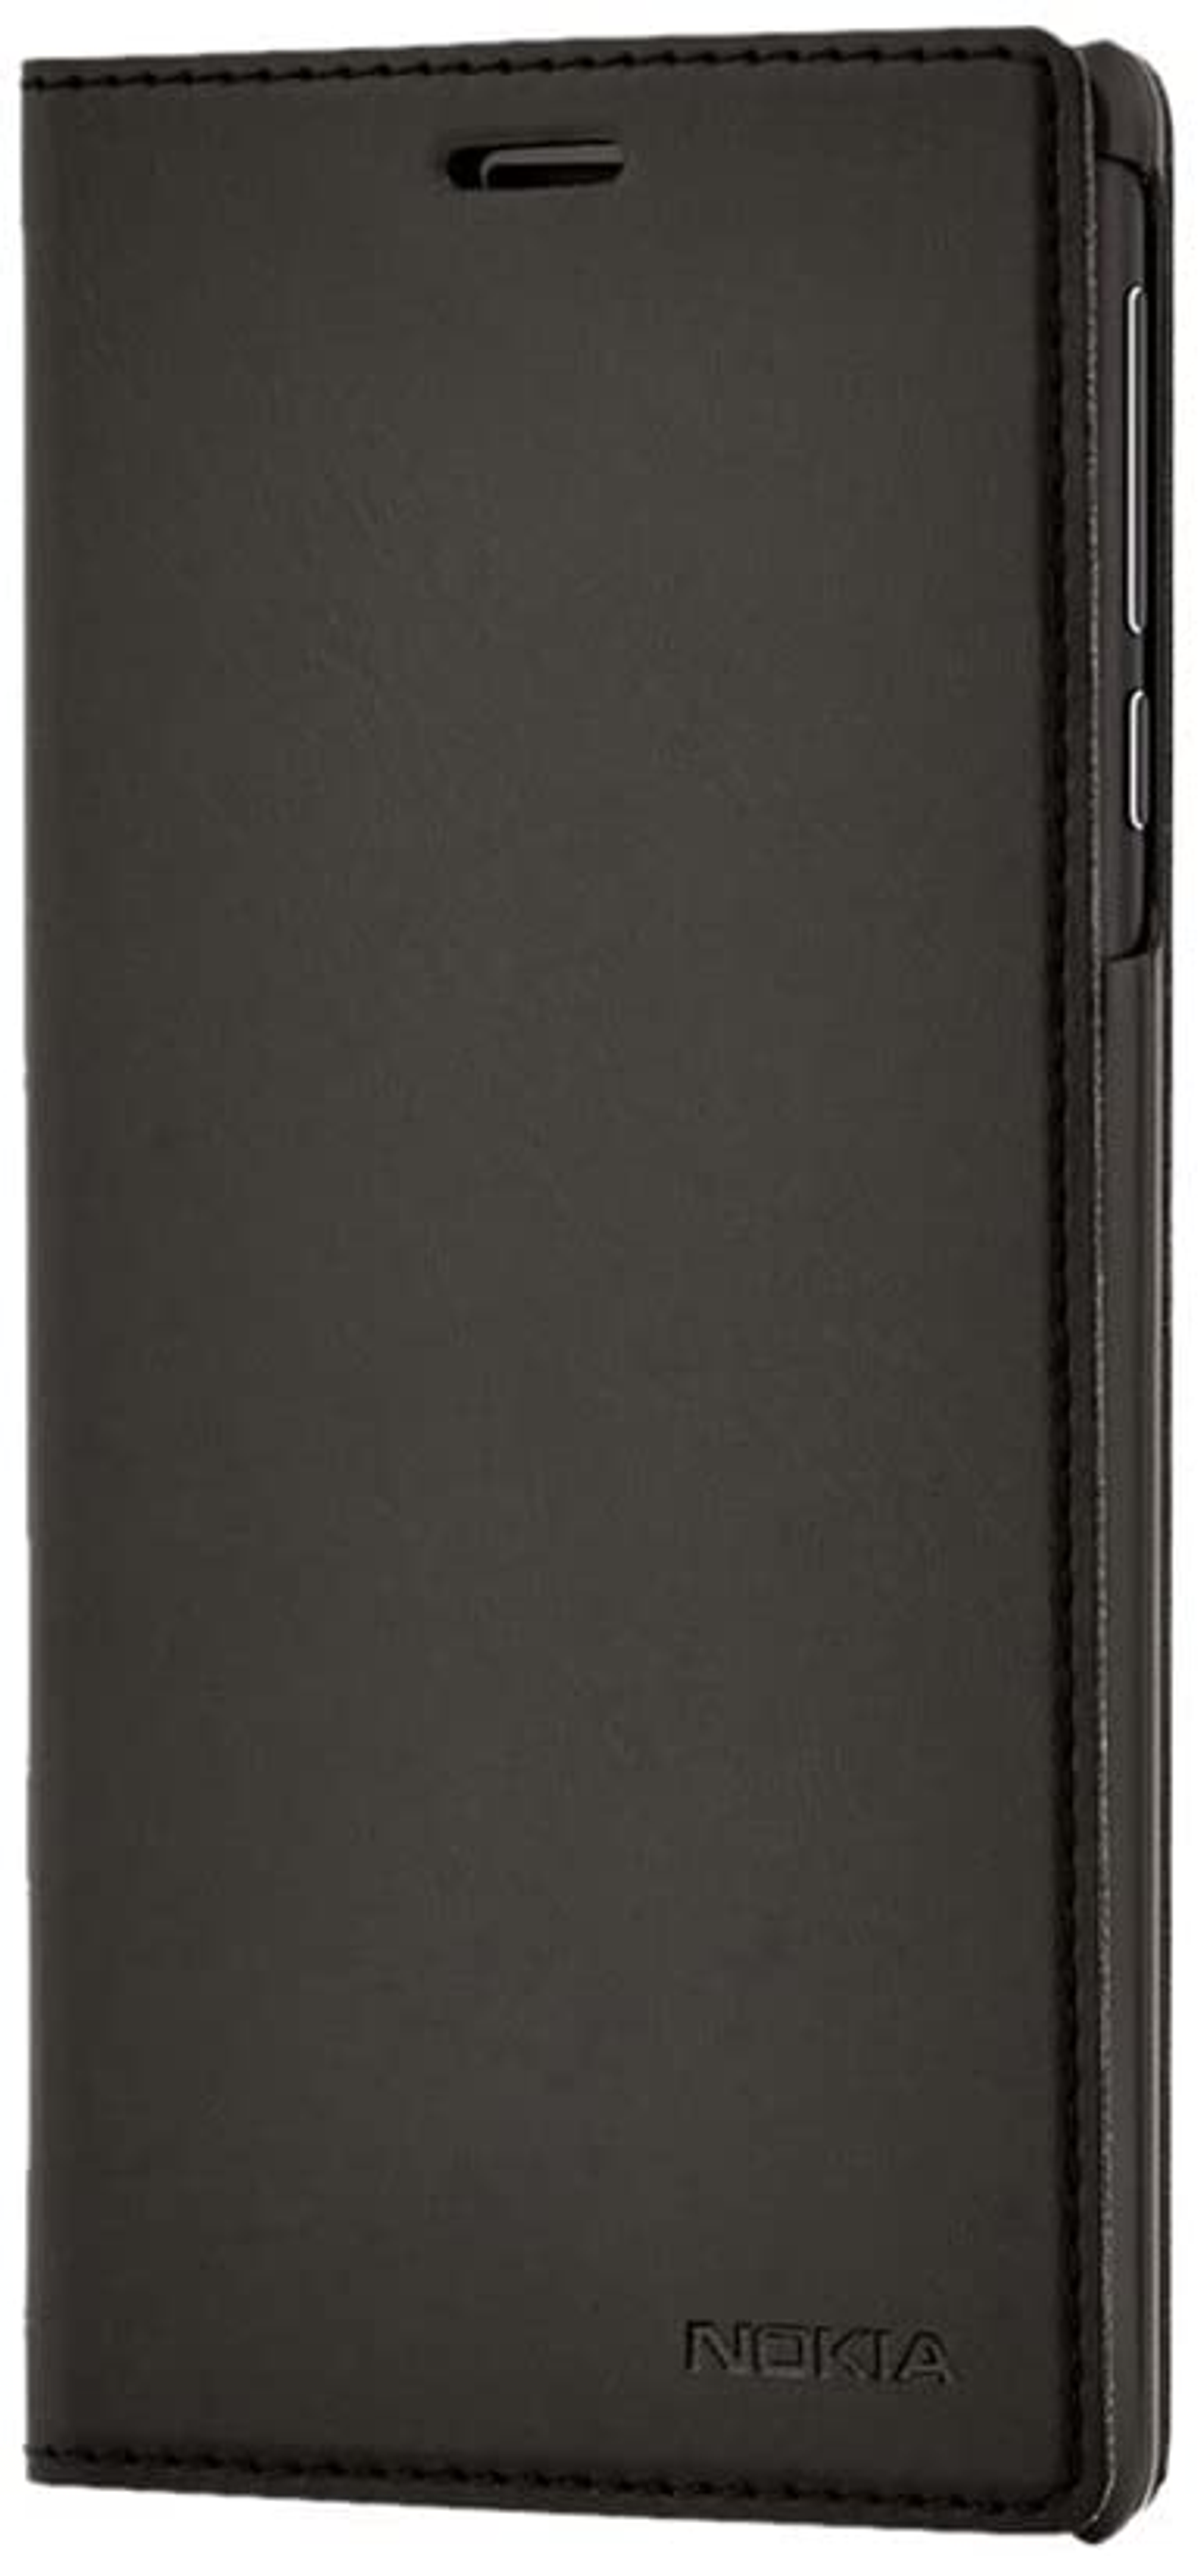 Universal, Flip NOKIA Noir Schwarz Case CP-303, 3 3, Bookcover,